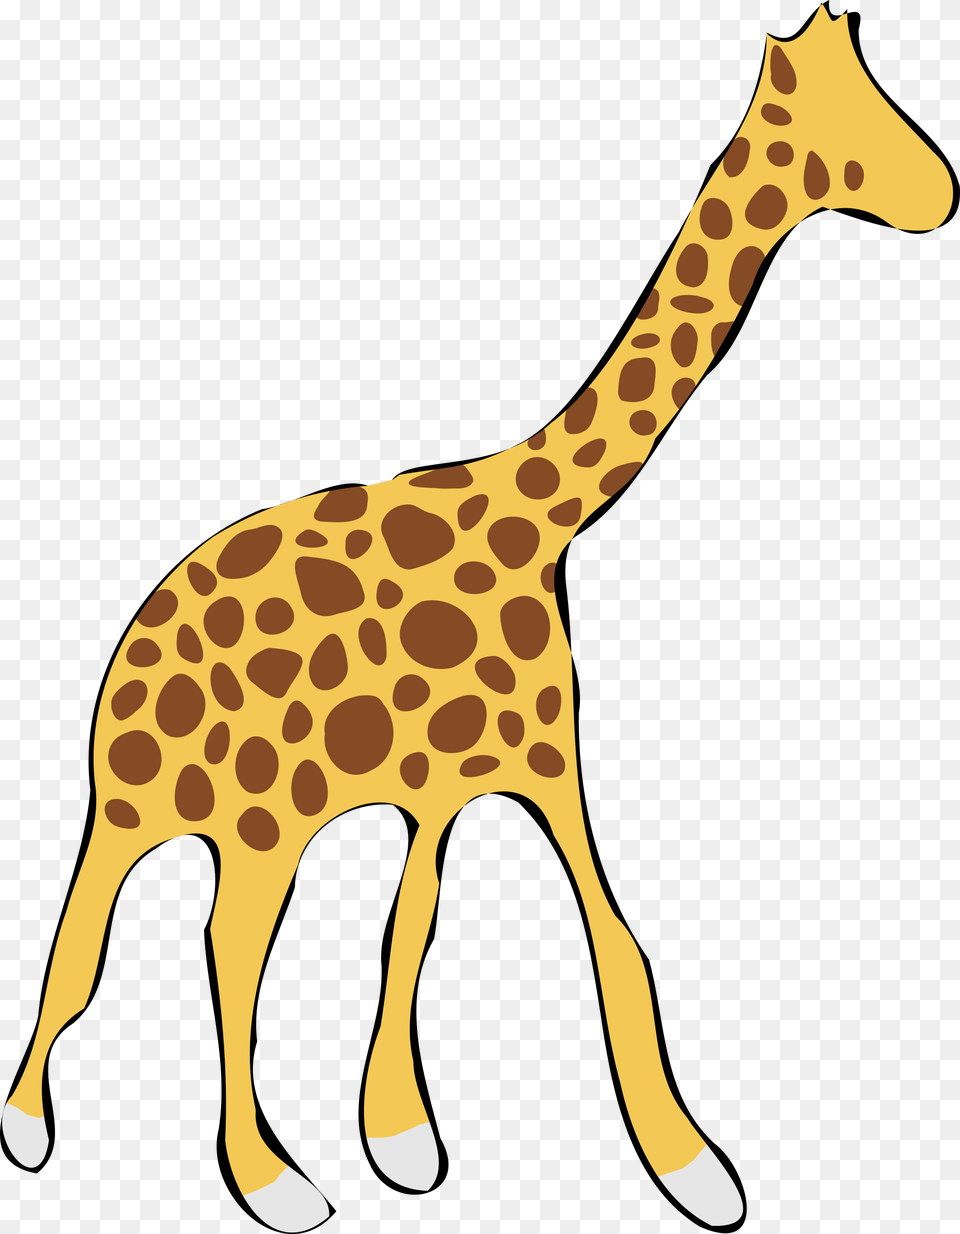 Giraffe Icons, Animal, Mammal, Wildlife, Panther Png Image